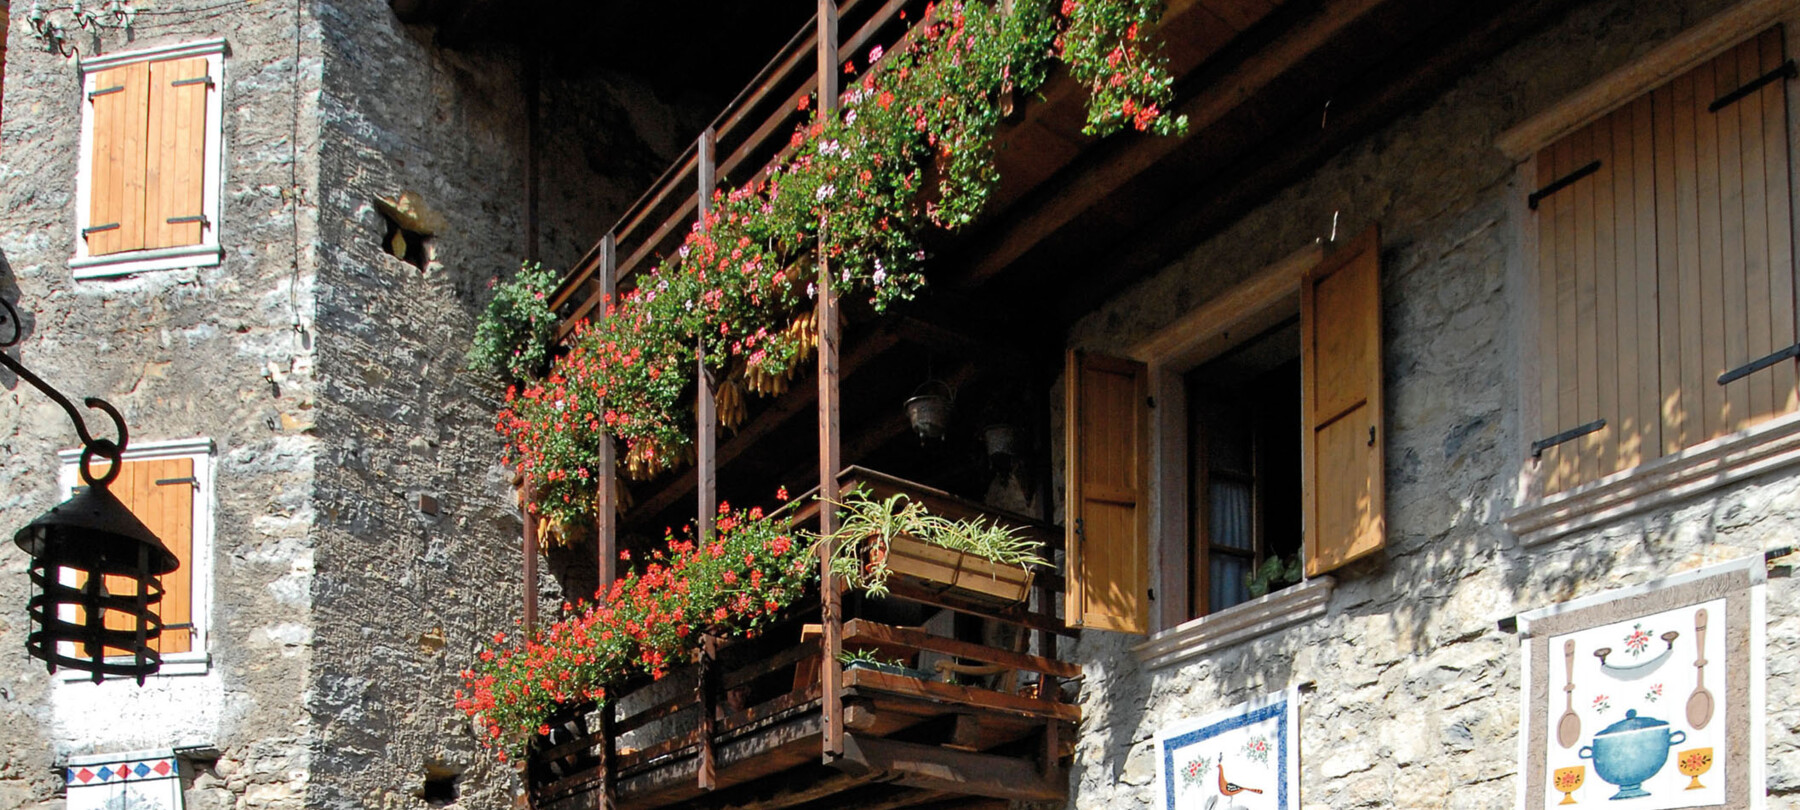 Schon Pläne für das Wochenende? Wie Wäre es mit einem Ausflug ins mittelalterliche Dorf Canale di Tenno?